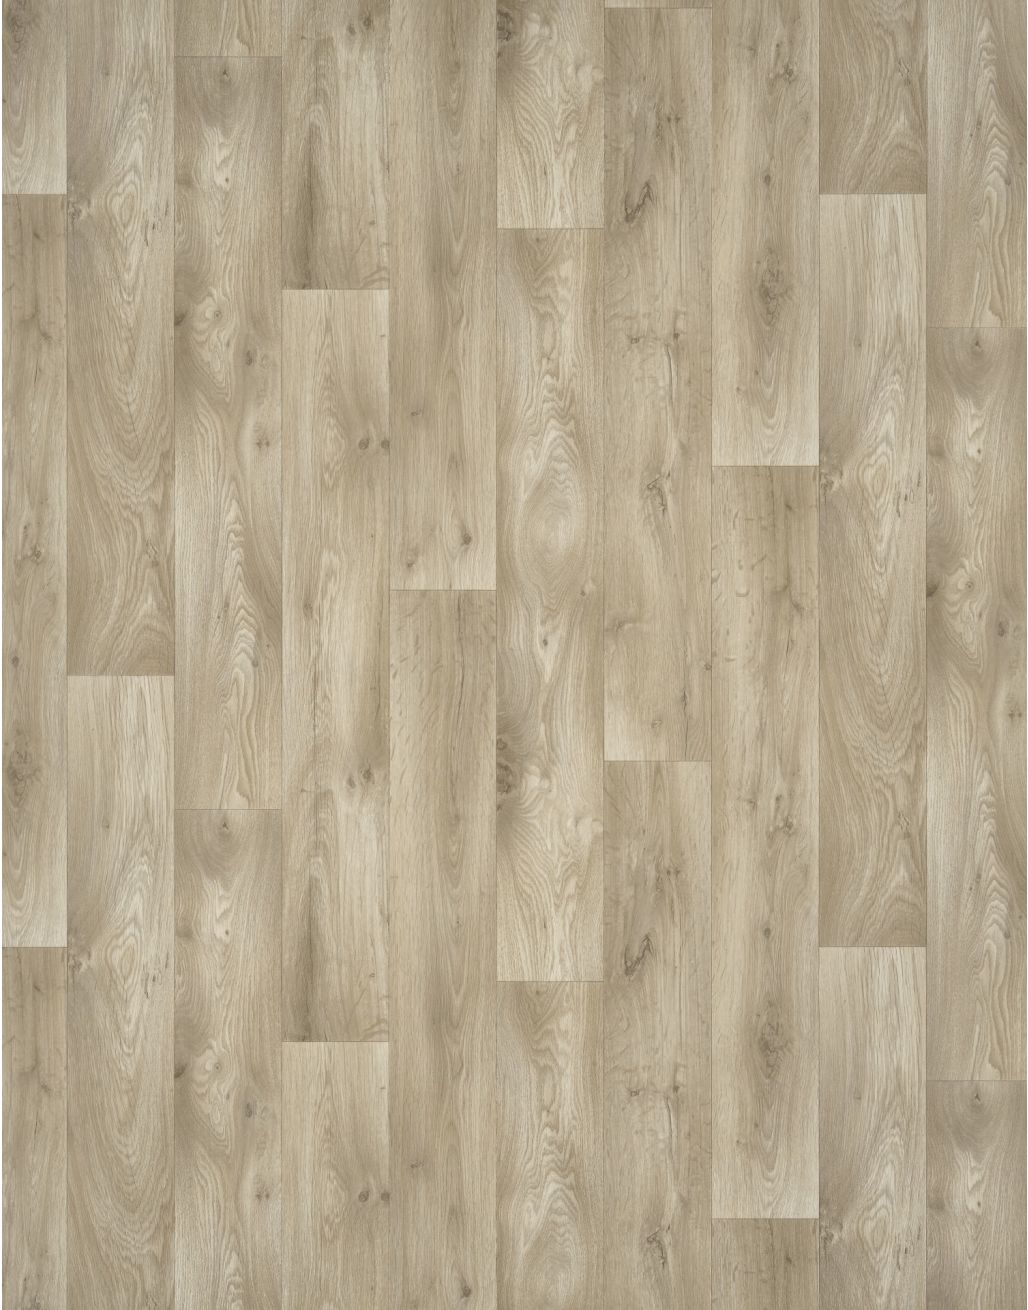 Imperia Aspen Oak Flooring Super, Aspen Oak Vinyl Flooring